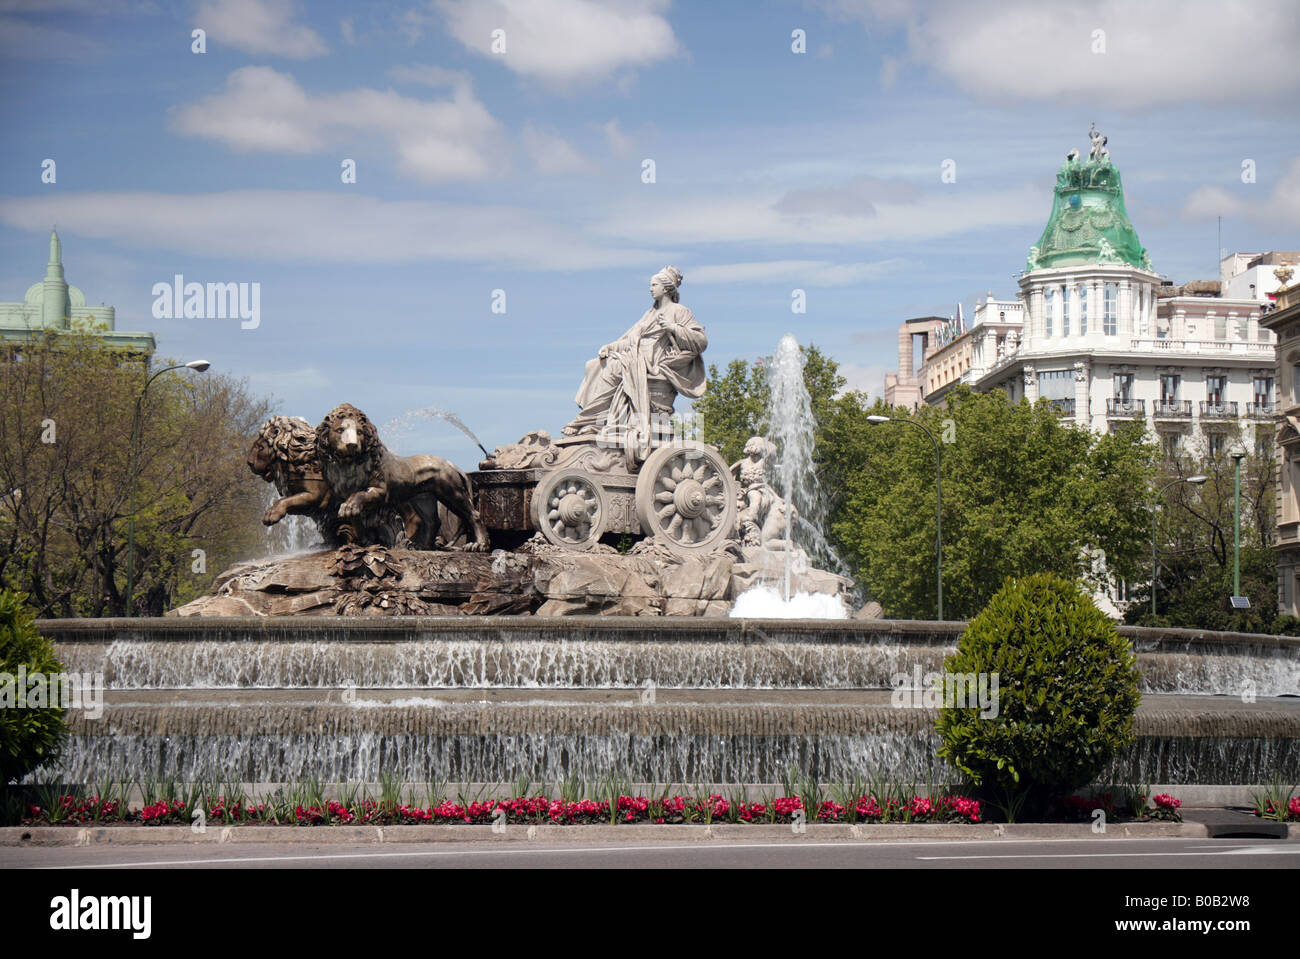 fountain in Plaza de la Cibeles Madrid Stock Photo